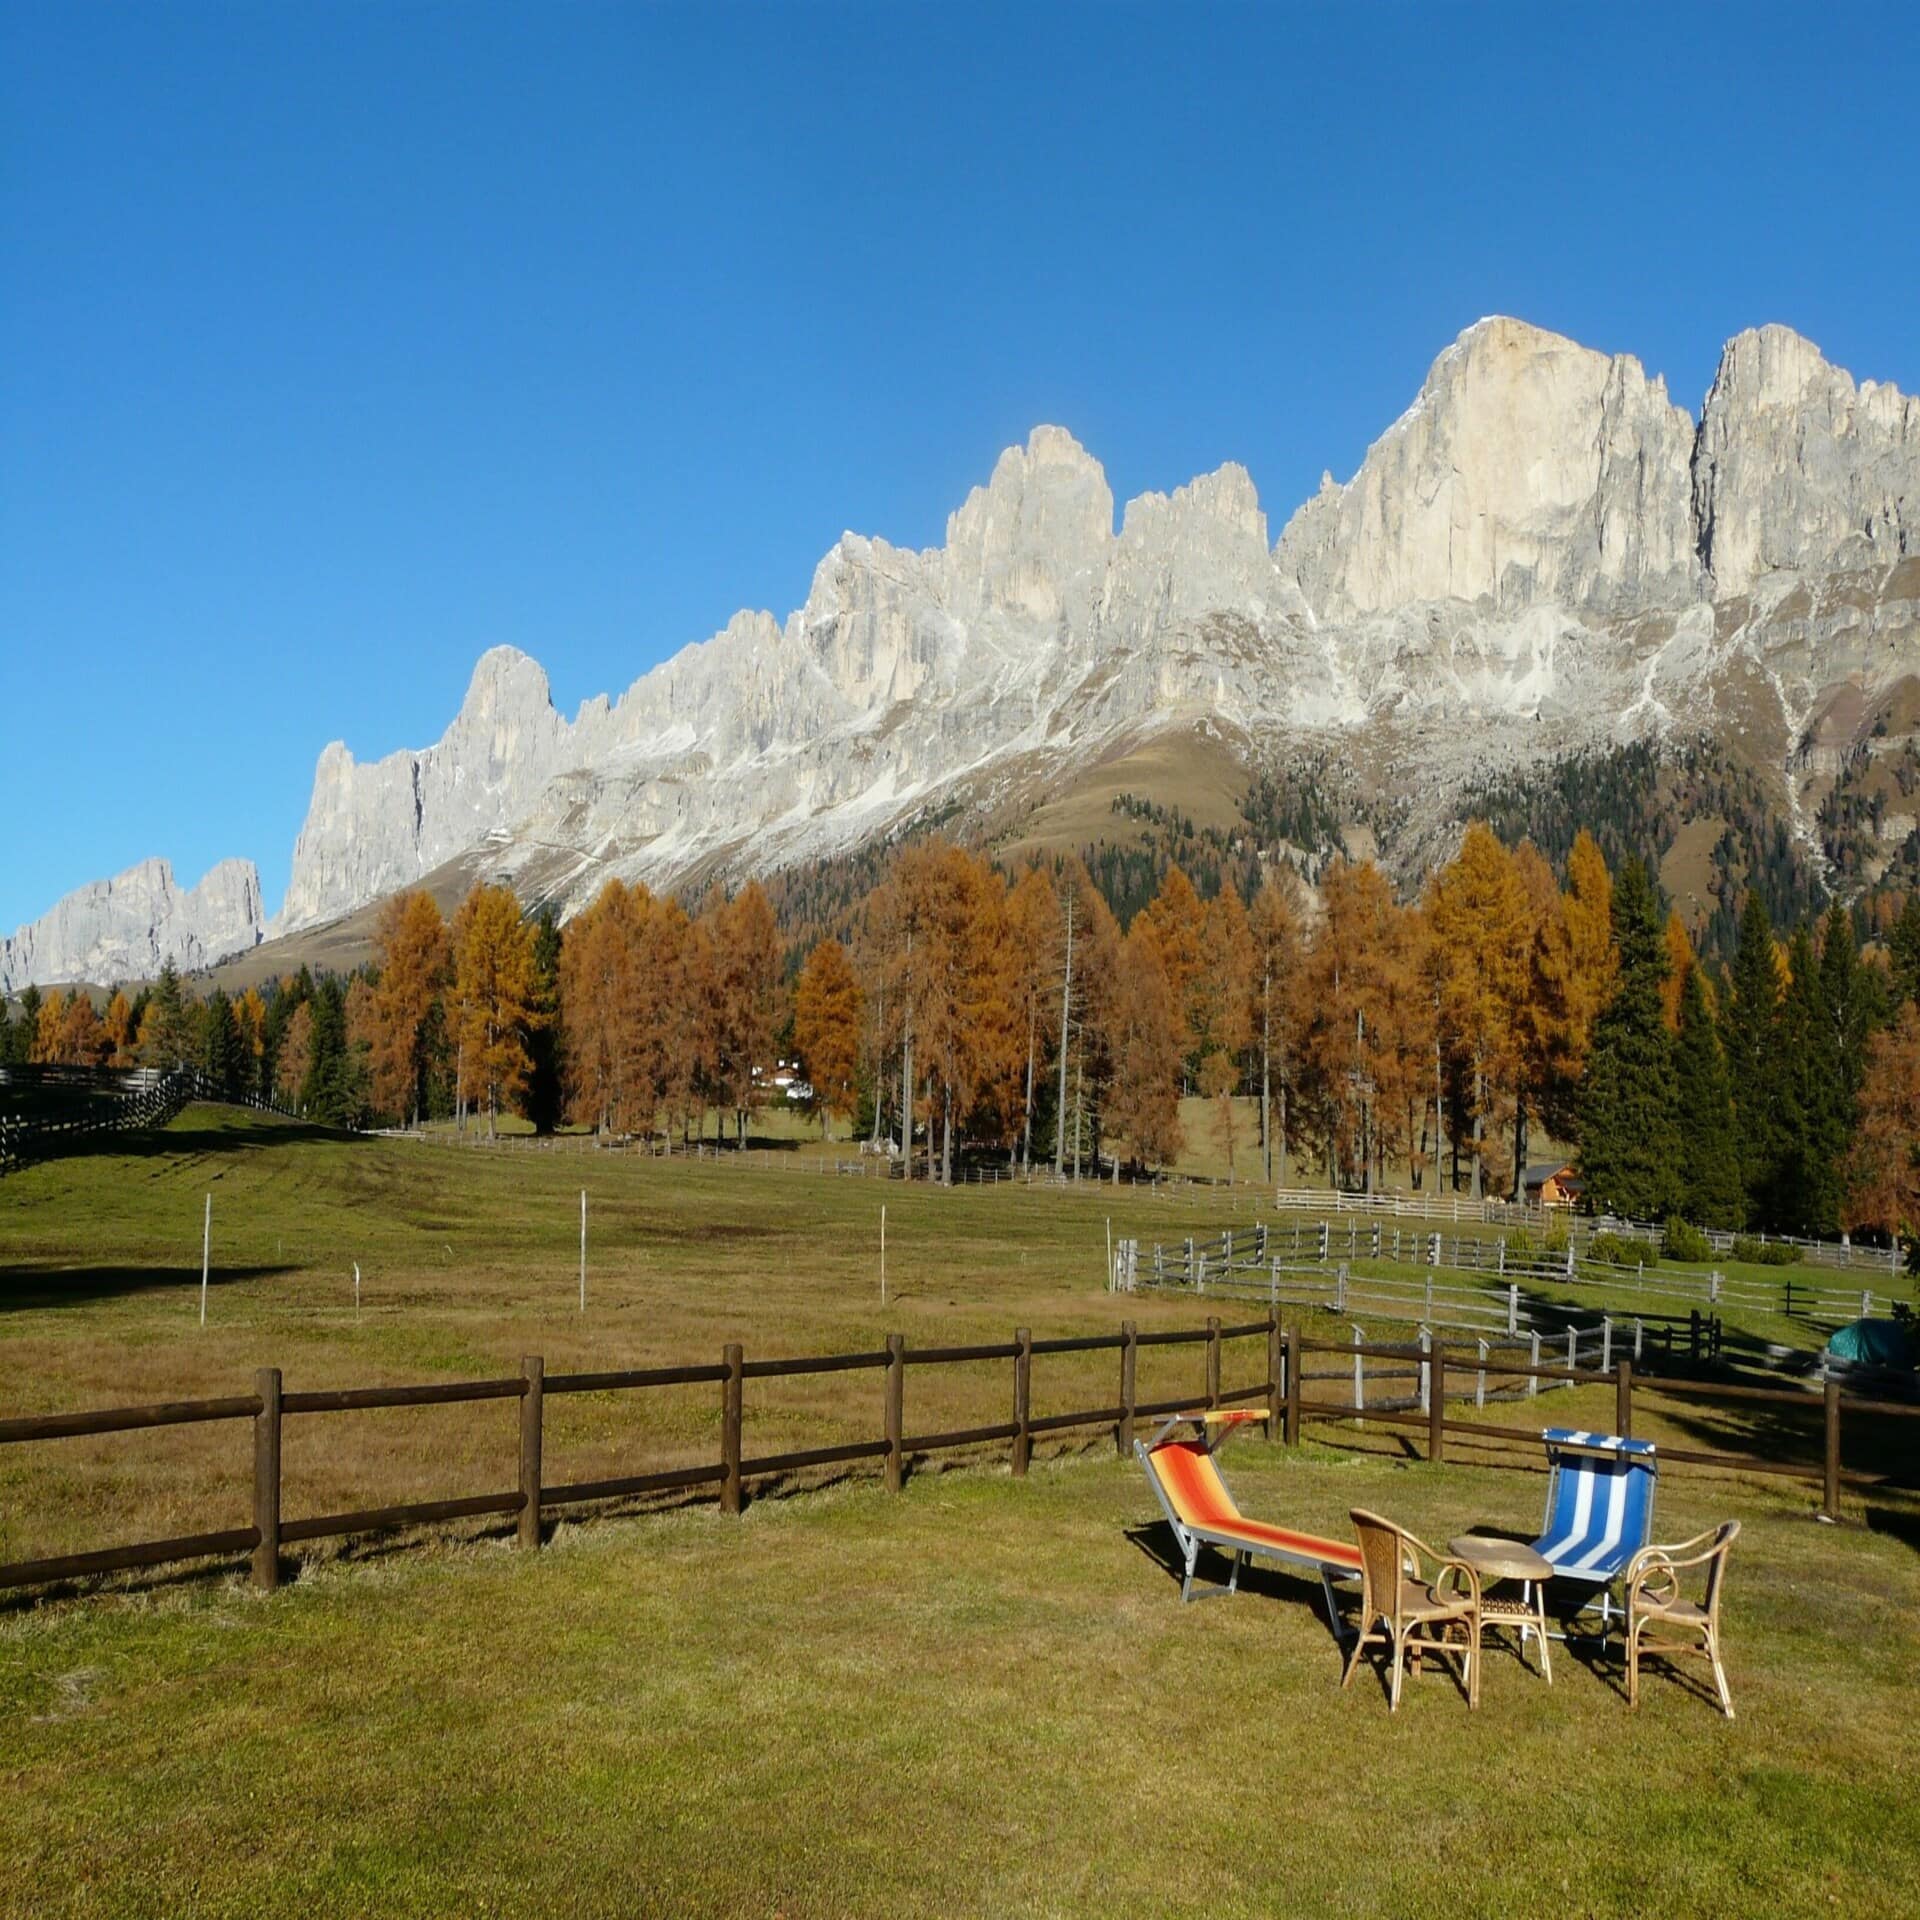 Garten mit Tisch, Stühlen und Liegestühlen sowie Blick auf die Berge Südtirols. Die Sonne scheint, es ist Herbst.